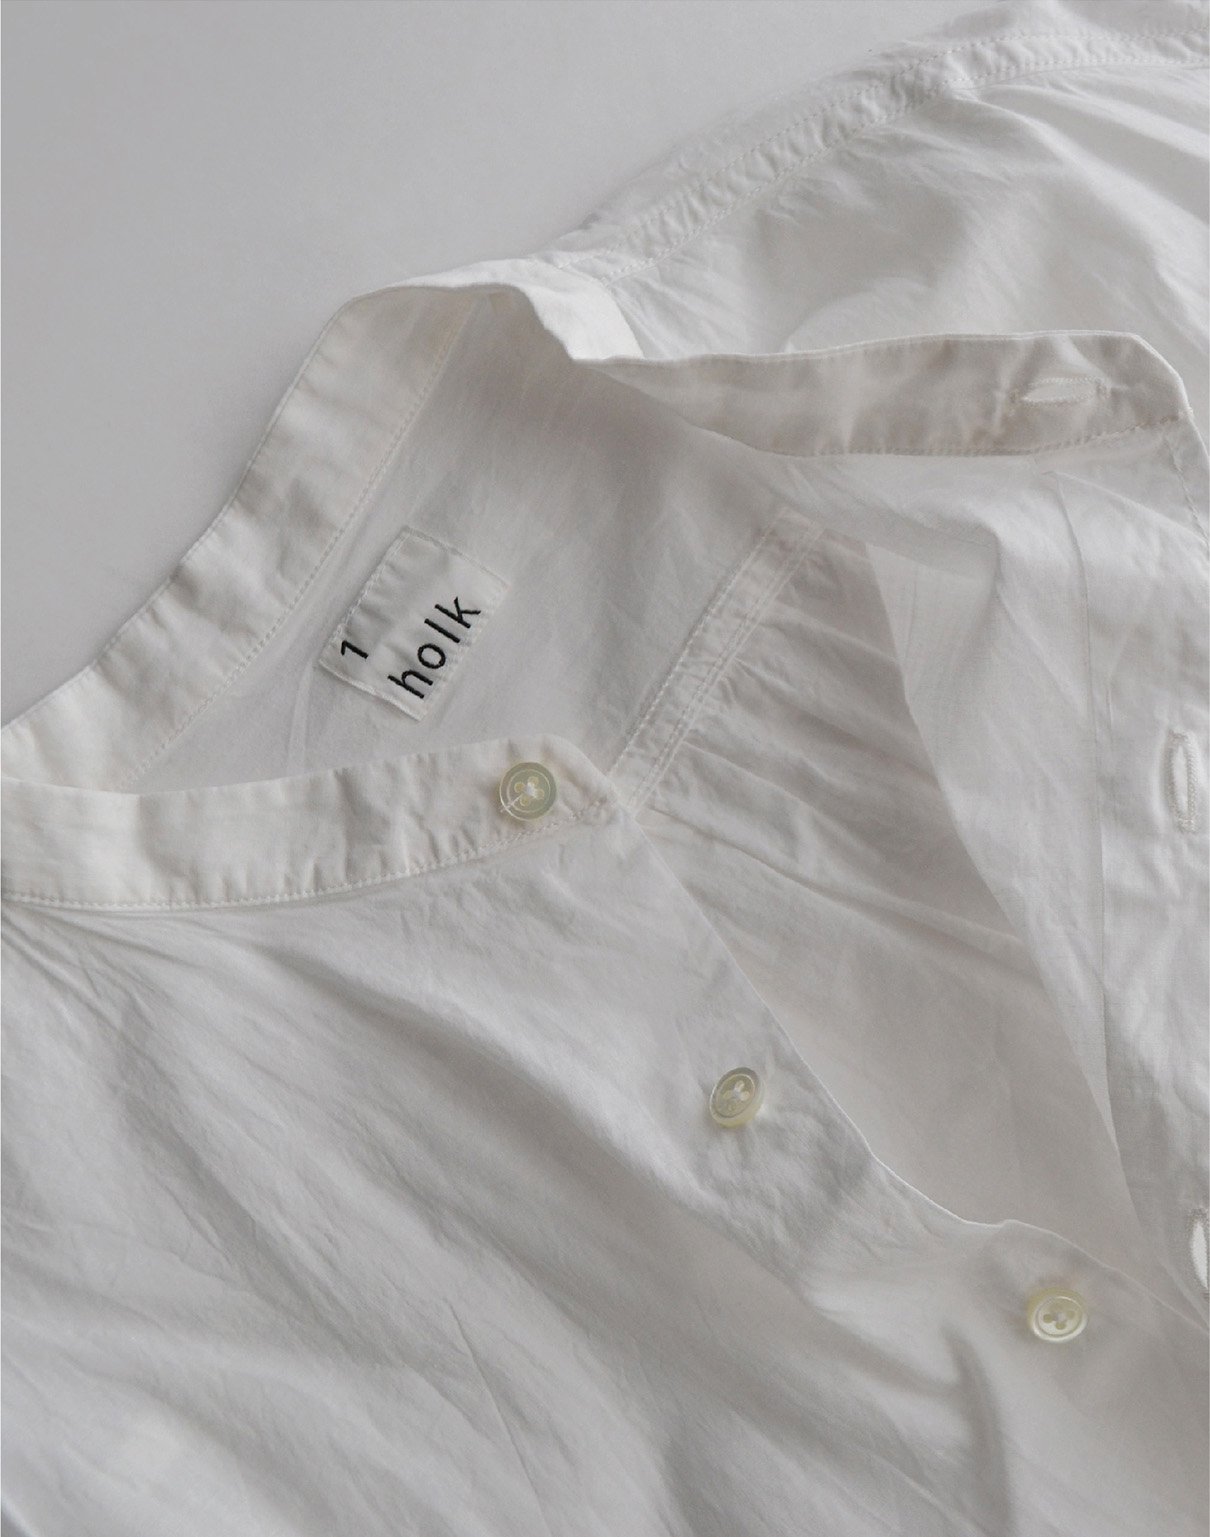 holk S/S shirt white